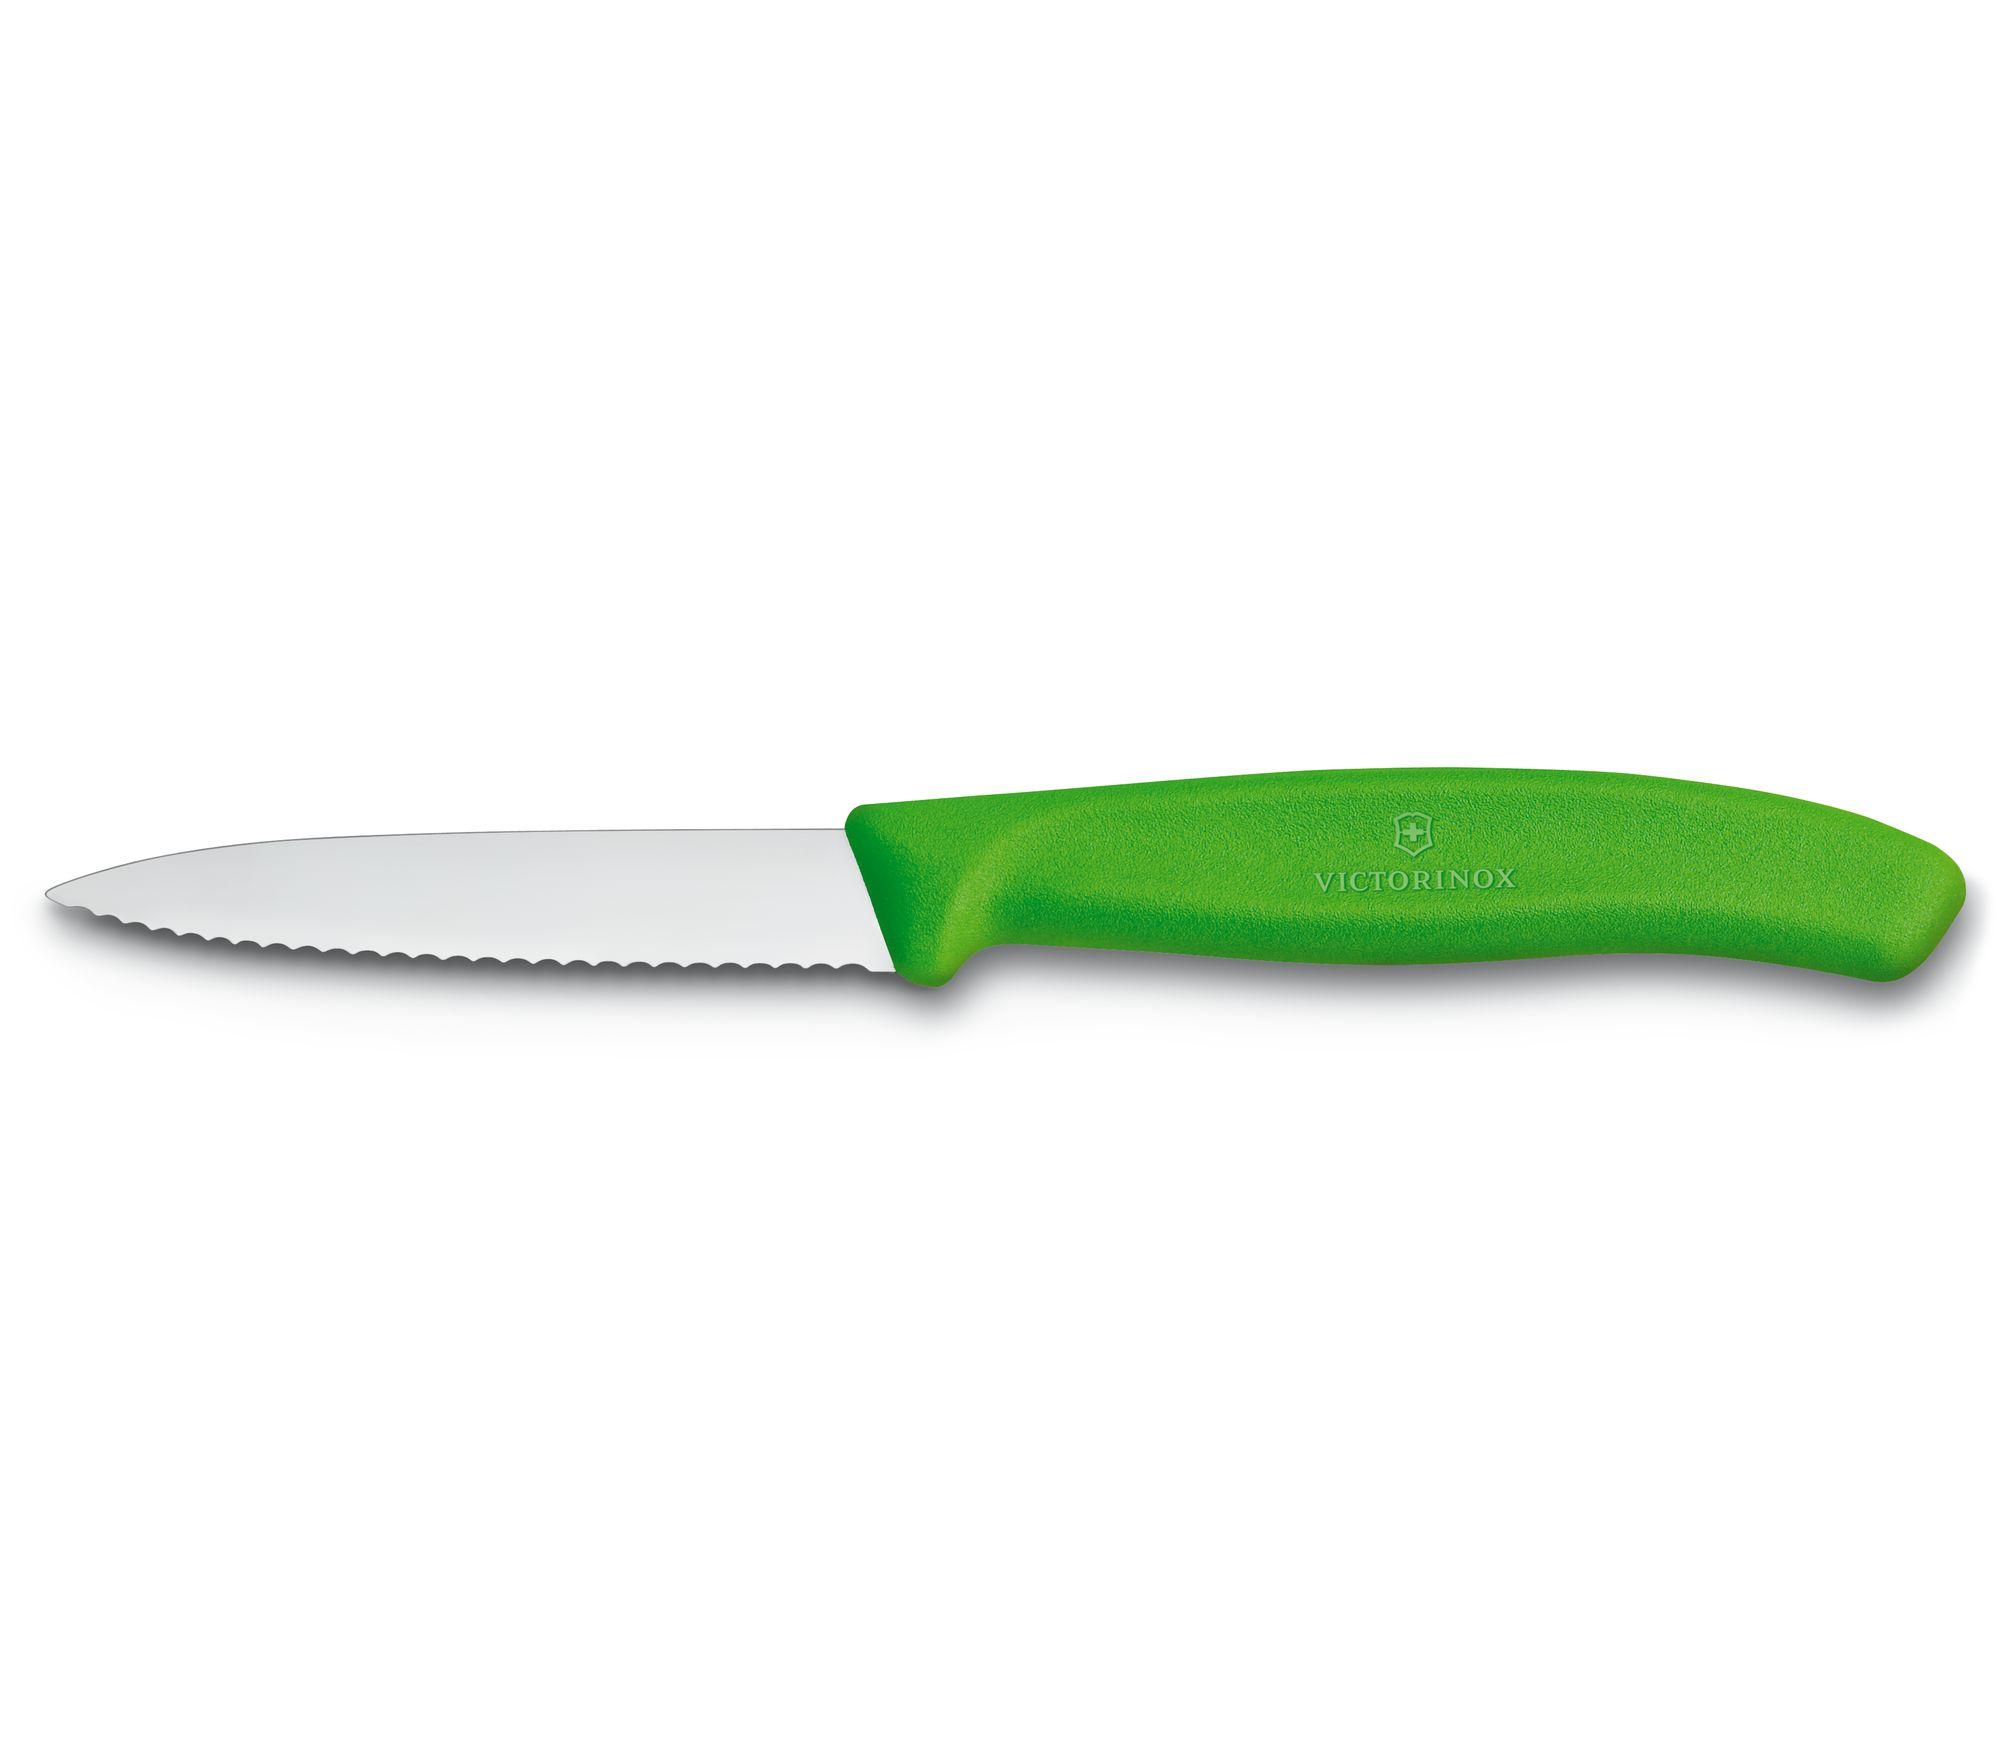 Victorinox Swiss Classic Paring Knife In Green 6 7636 L114